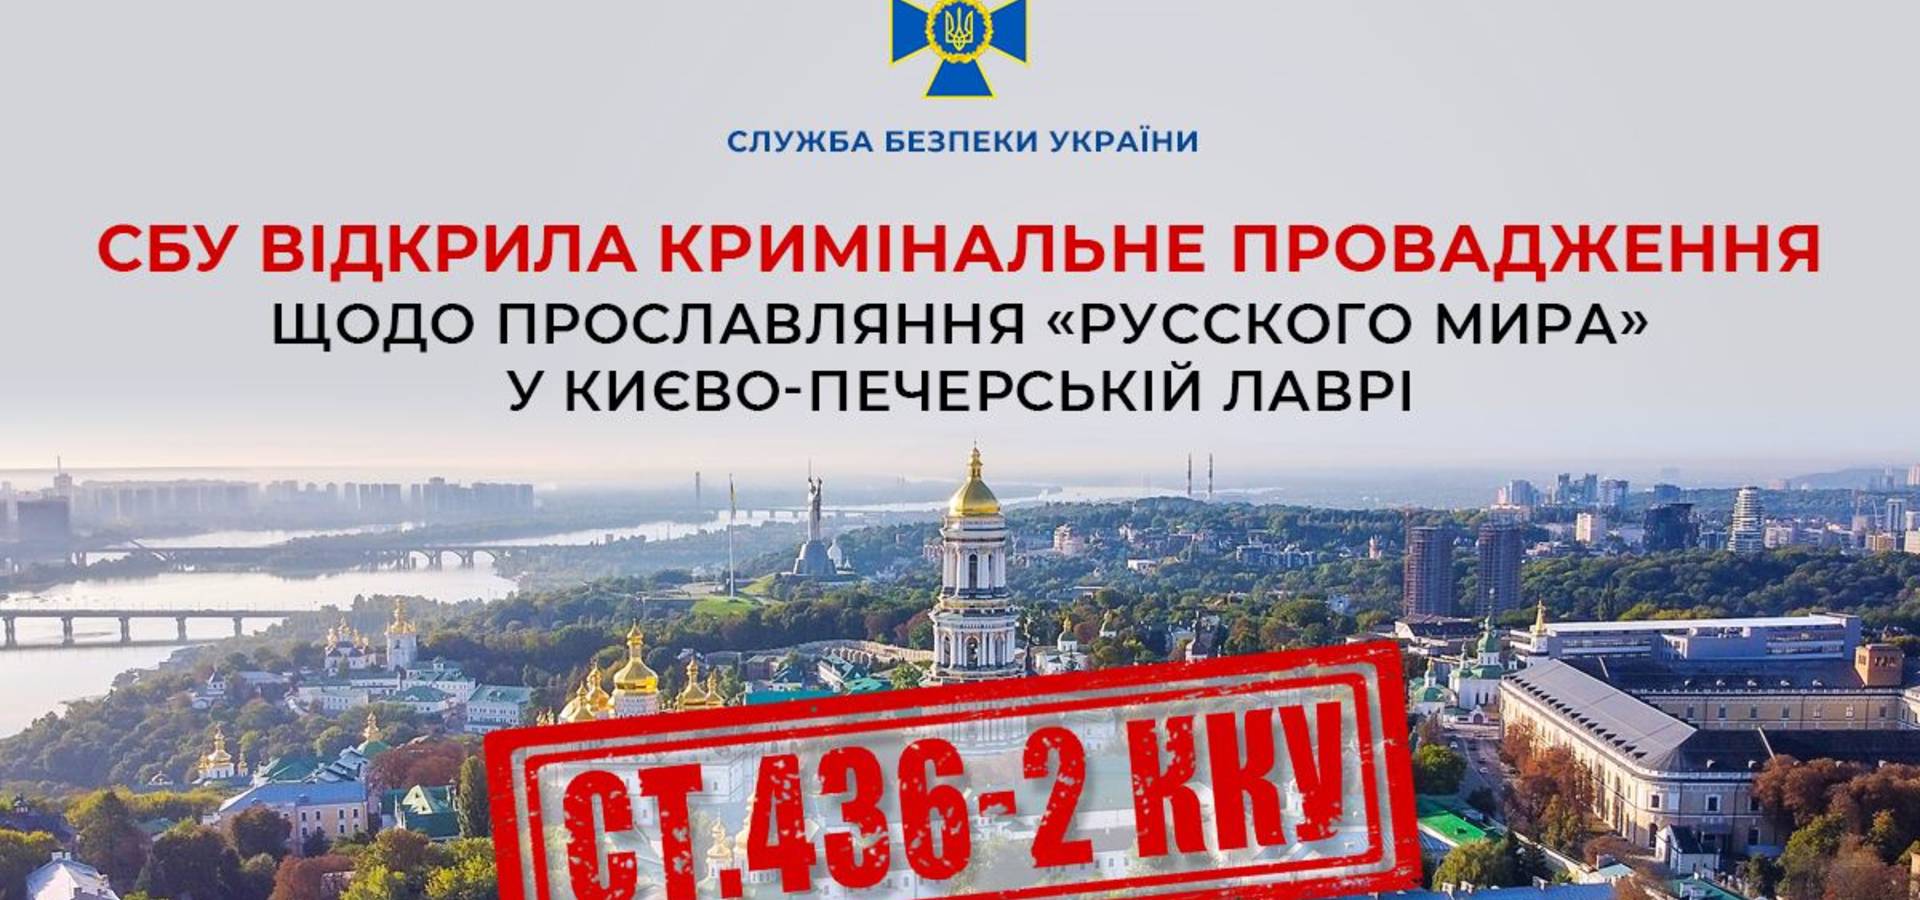 СБУ відкрила кримінальне провадження через російську пропаганду, яка звучала на території Києво-Печерської Лаври